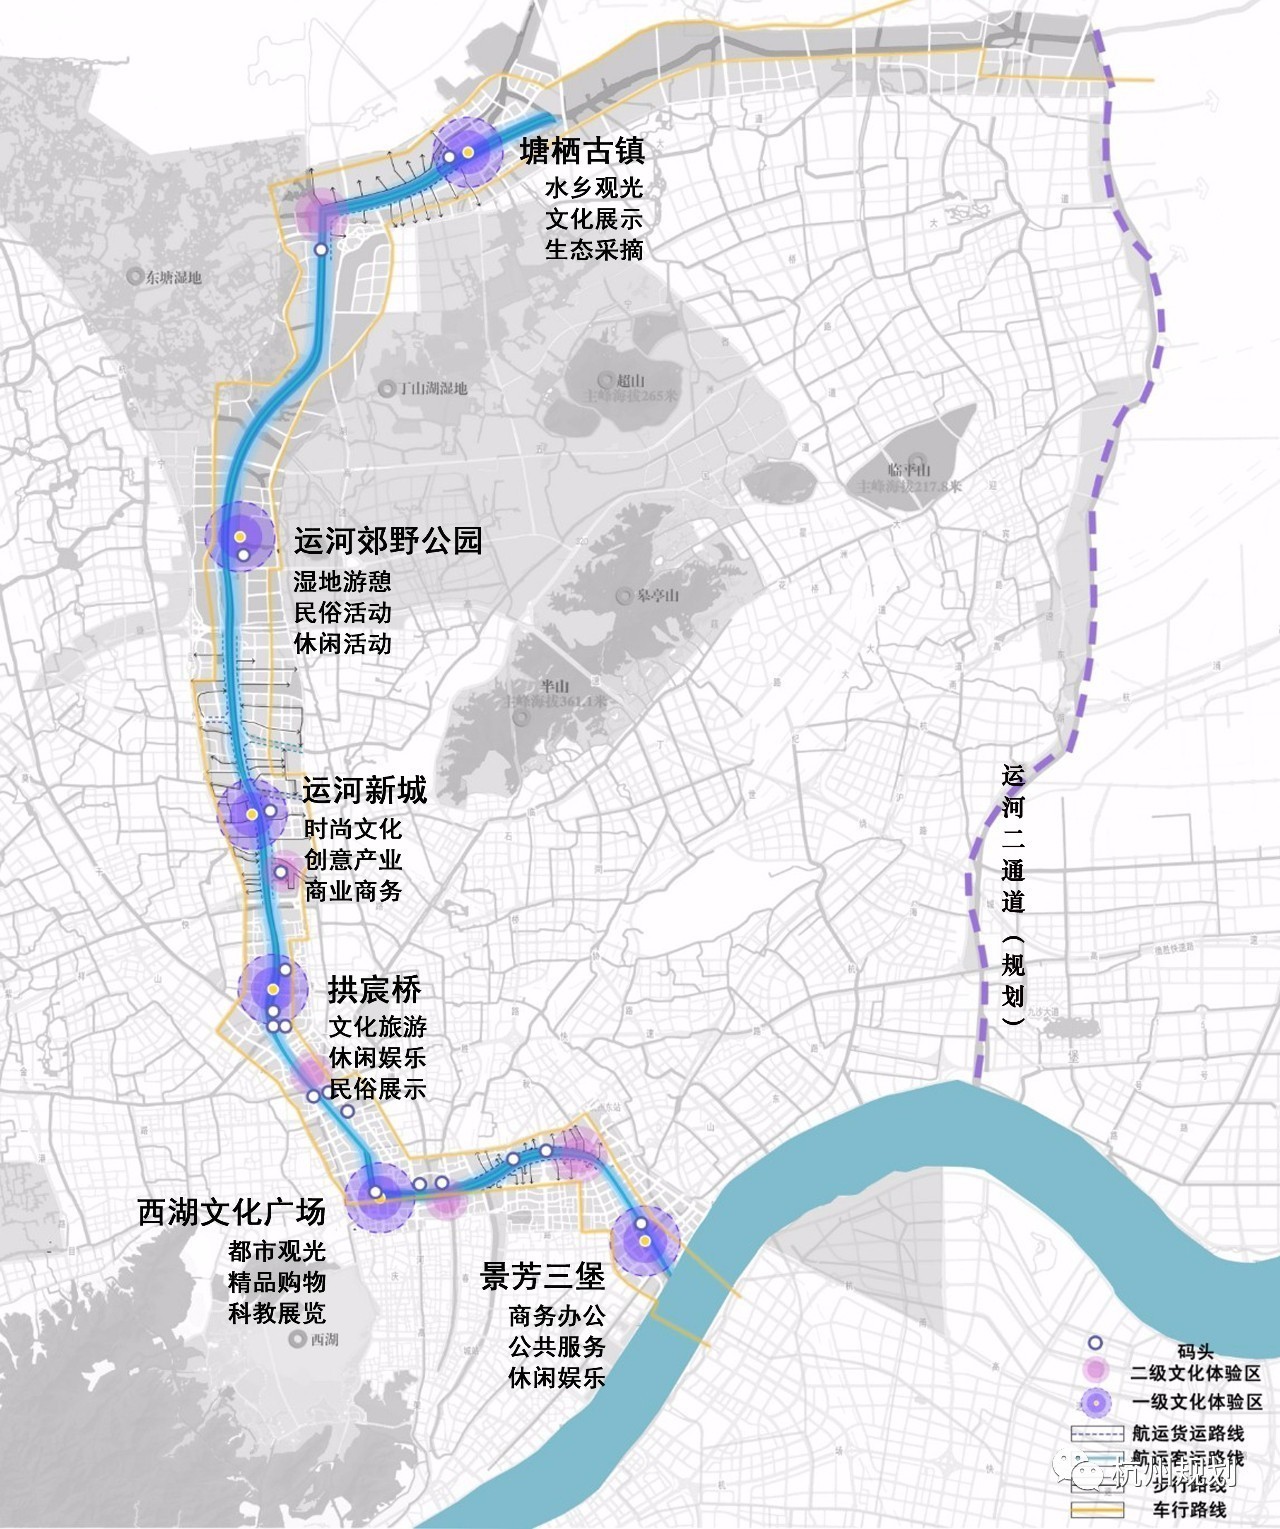 文化引领城河互动丨京杭运河杭州段两岸城市景观提升工程规划草案正在